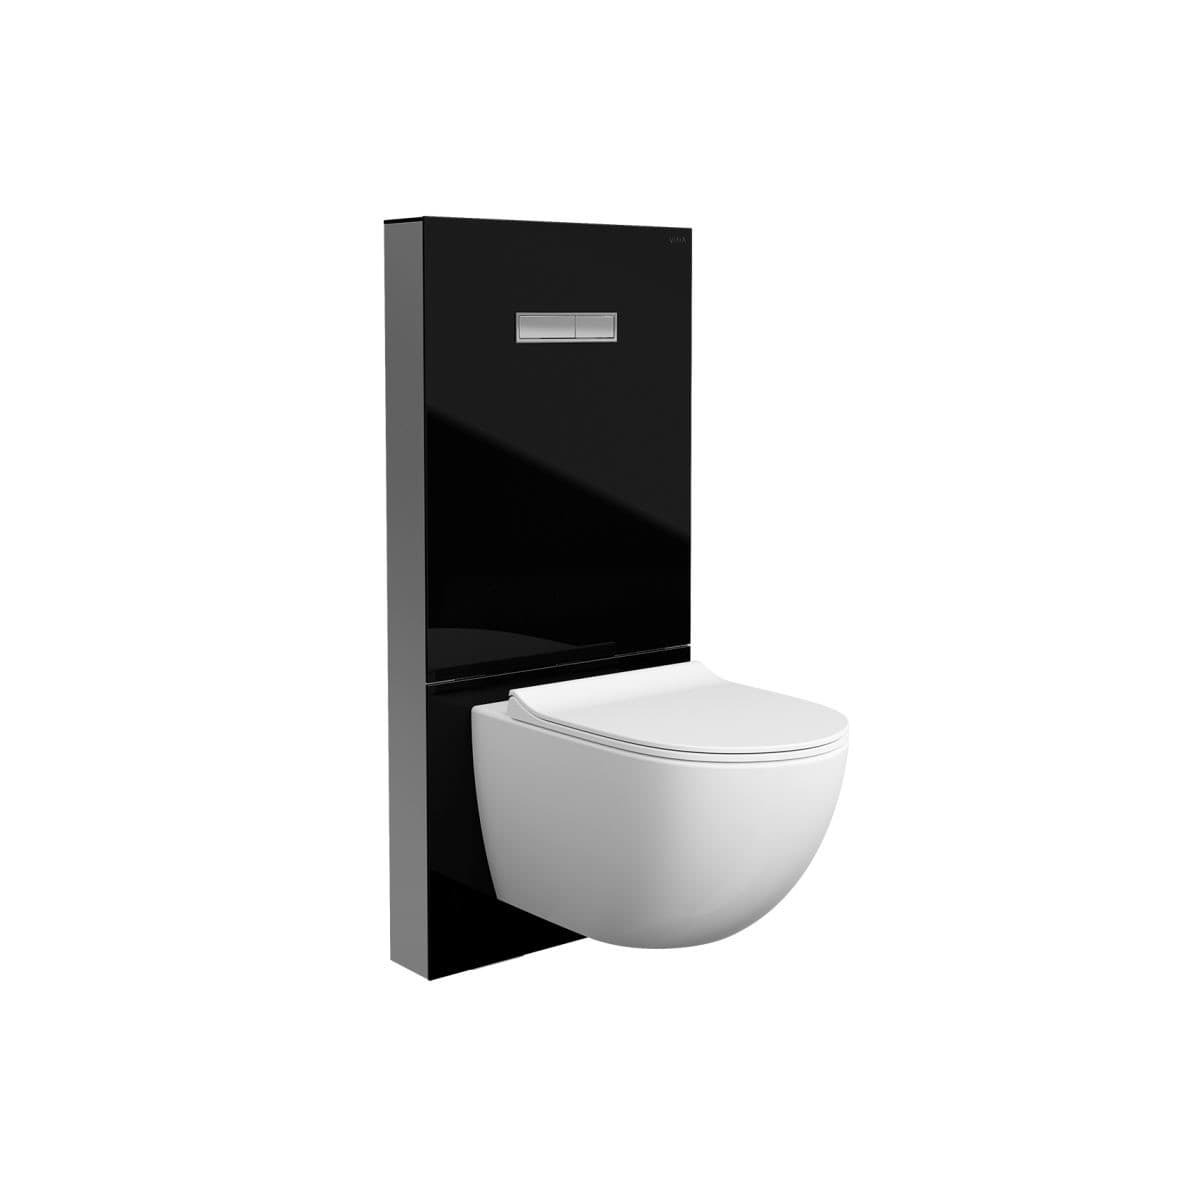 Sanitární modul VitrA Vitrus pro závěsné WC černý 770-5761-01 Vitra